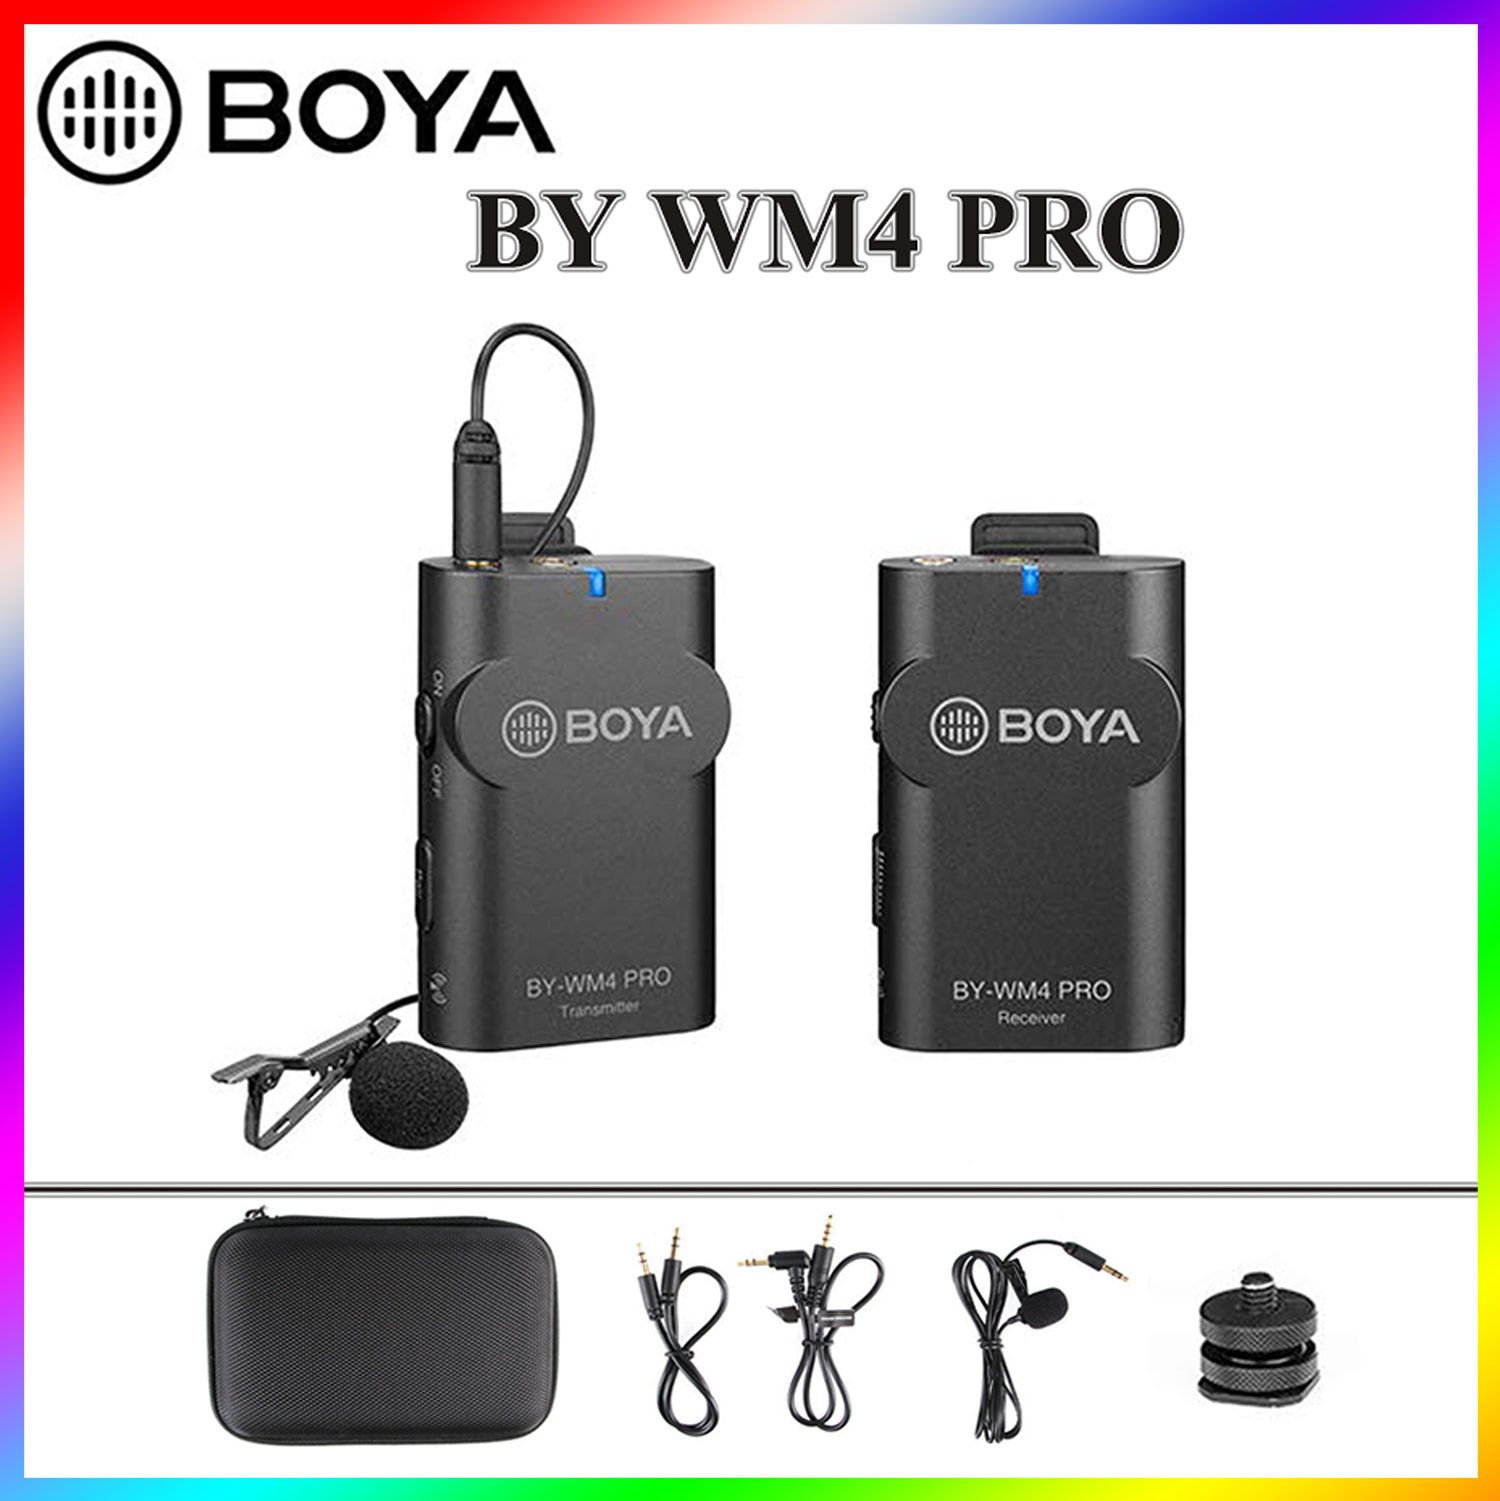 BOYA BY-WM4 Pro ไมโครโฟน สำหรับไลฟ์สด สำหรับสมาร์ทโฟน กล้อง [ของแท้ 100%]